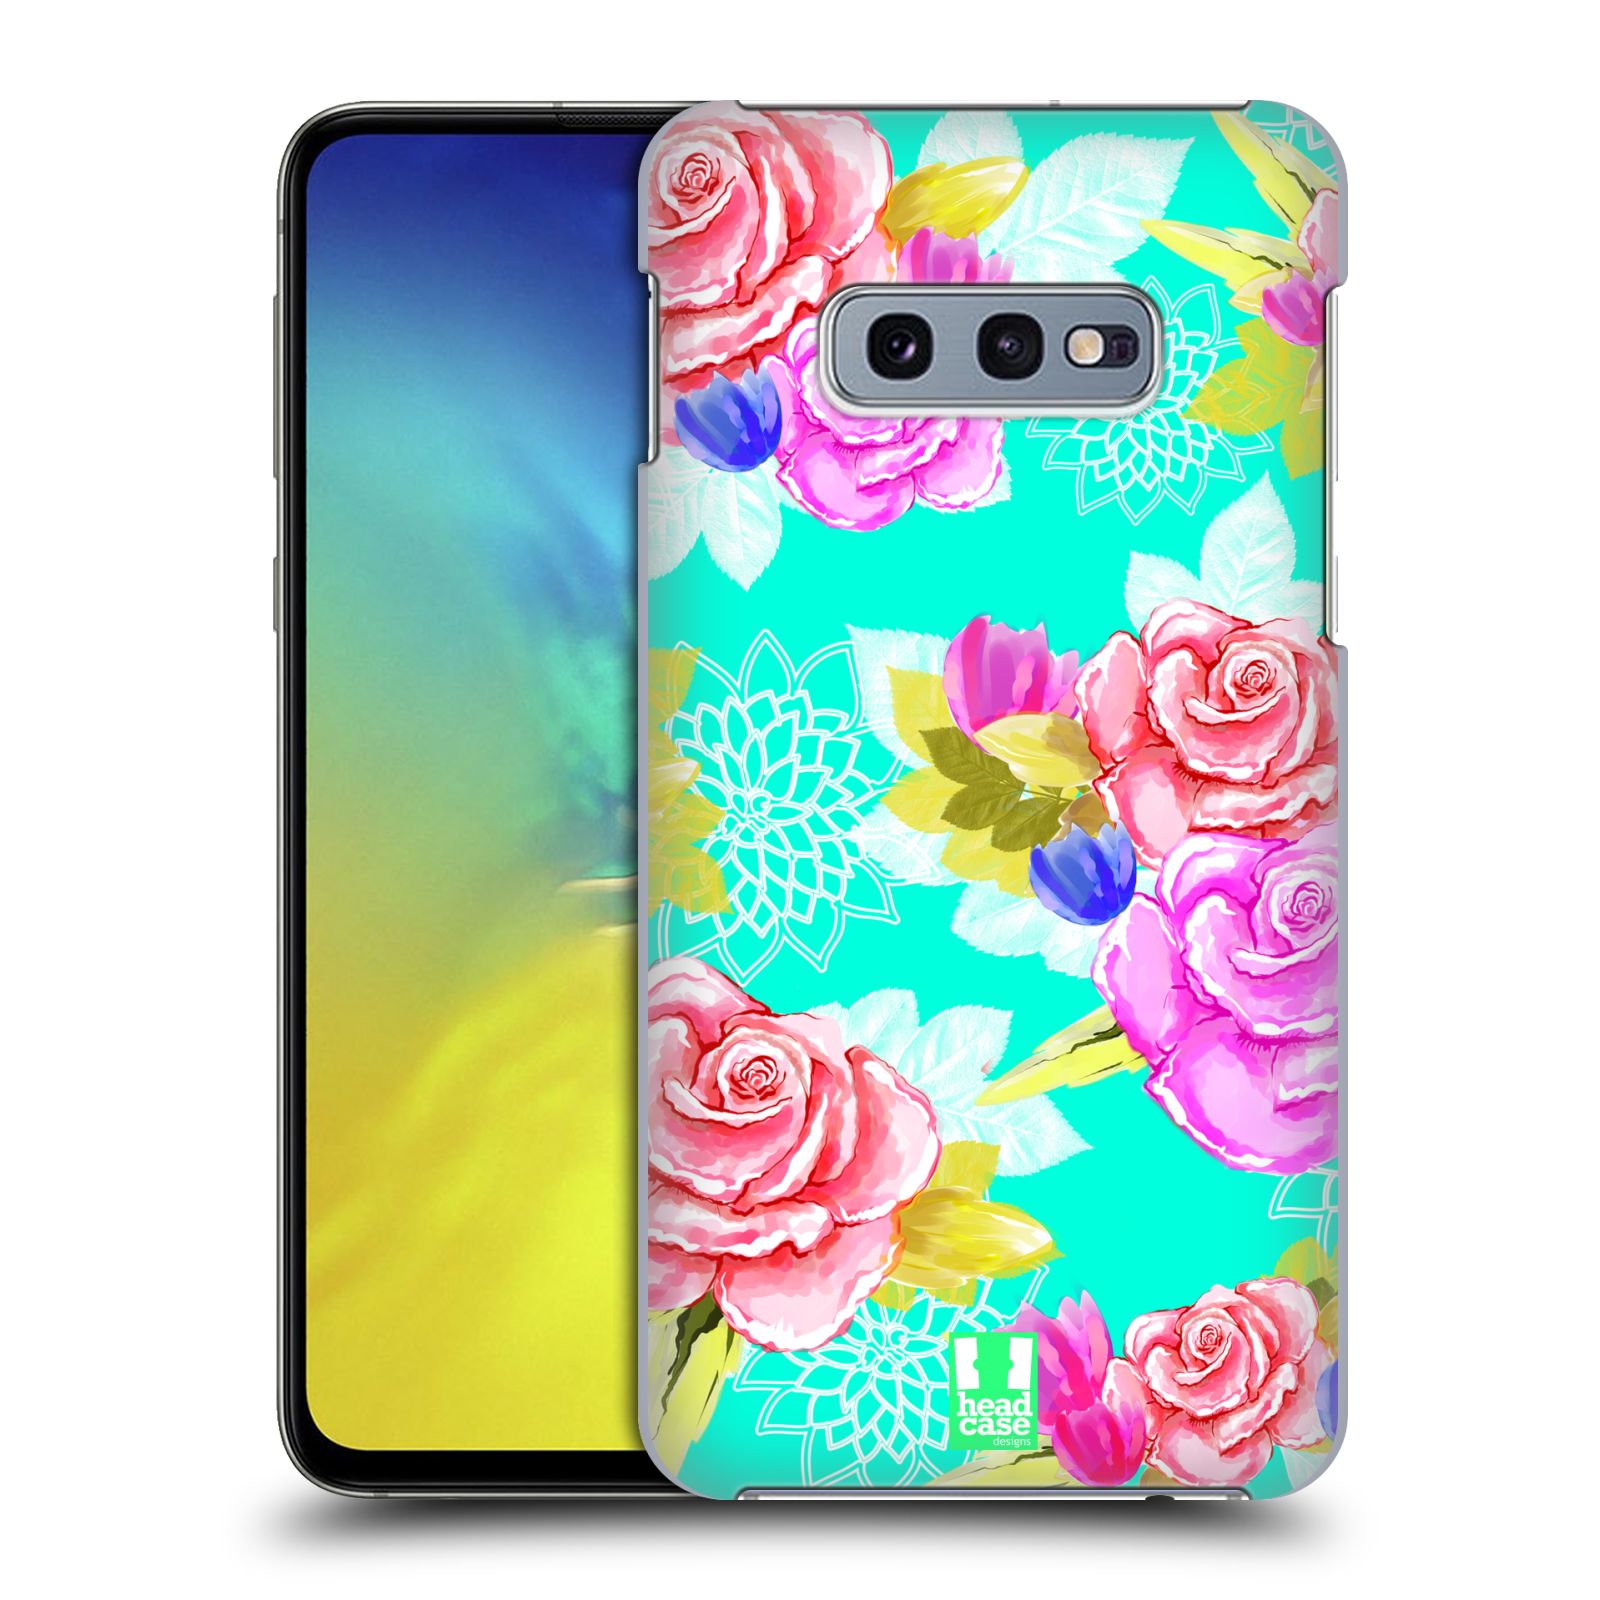 Pouzdro na mobil Samsung Galaxy S10e - HEAD CASE - vzor Malované květiny barevné AQUA MODRÁ